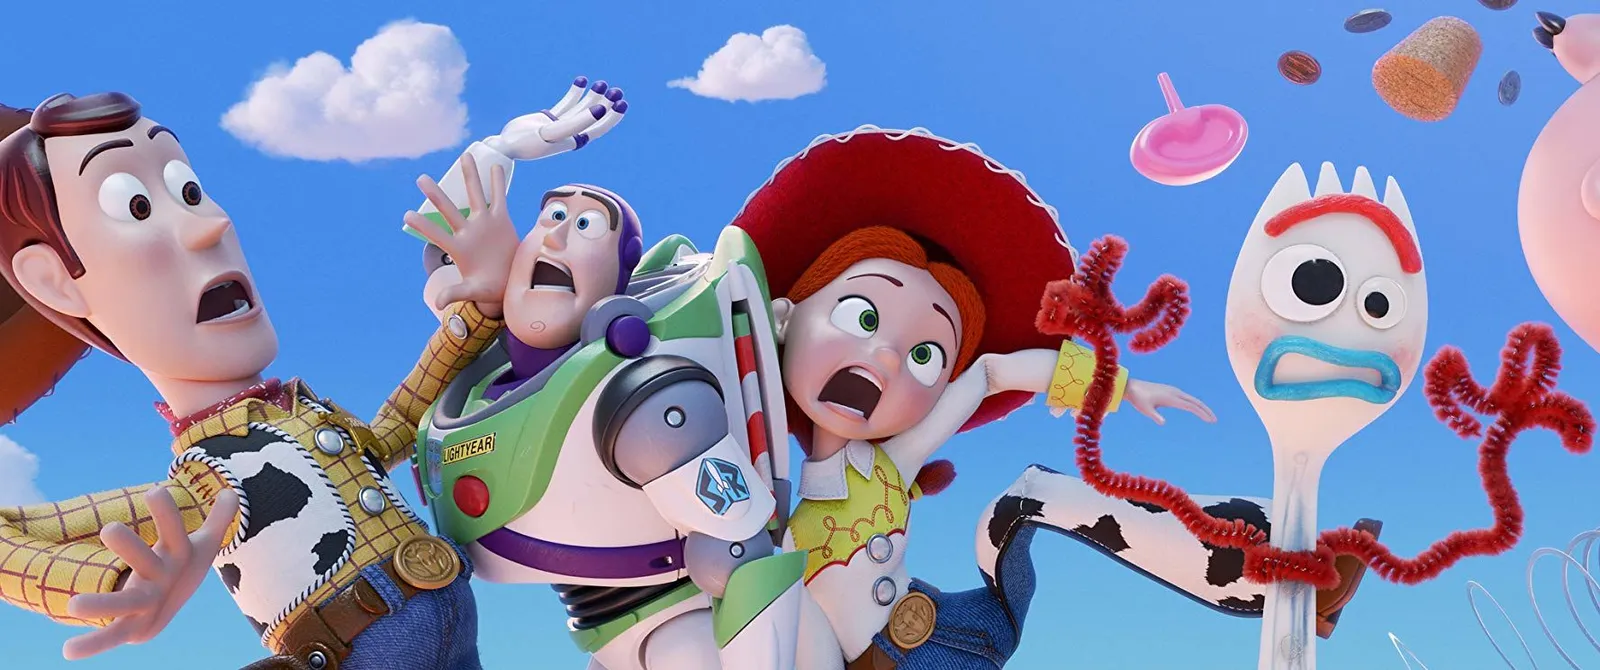 Banyak Karakter Baru, Ini 5 Hal Seru di Toy Story 4